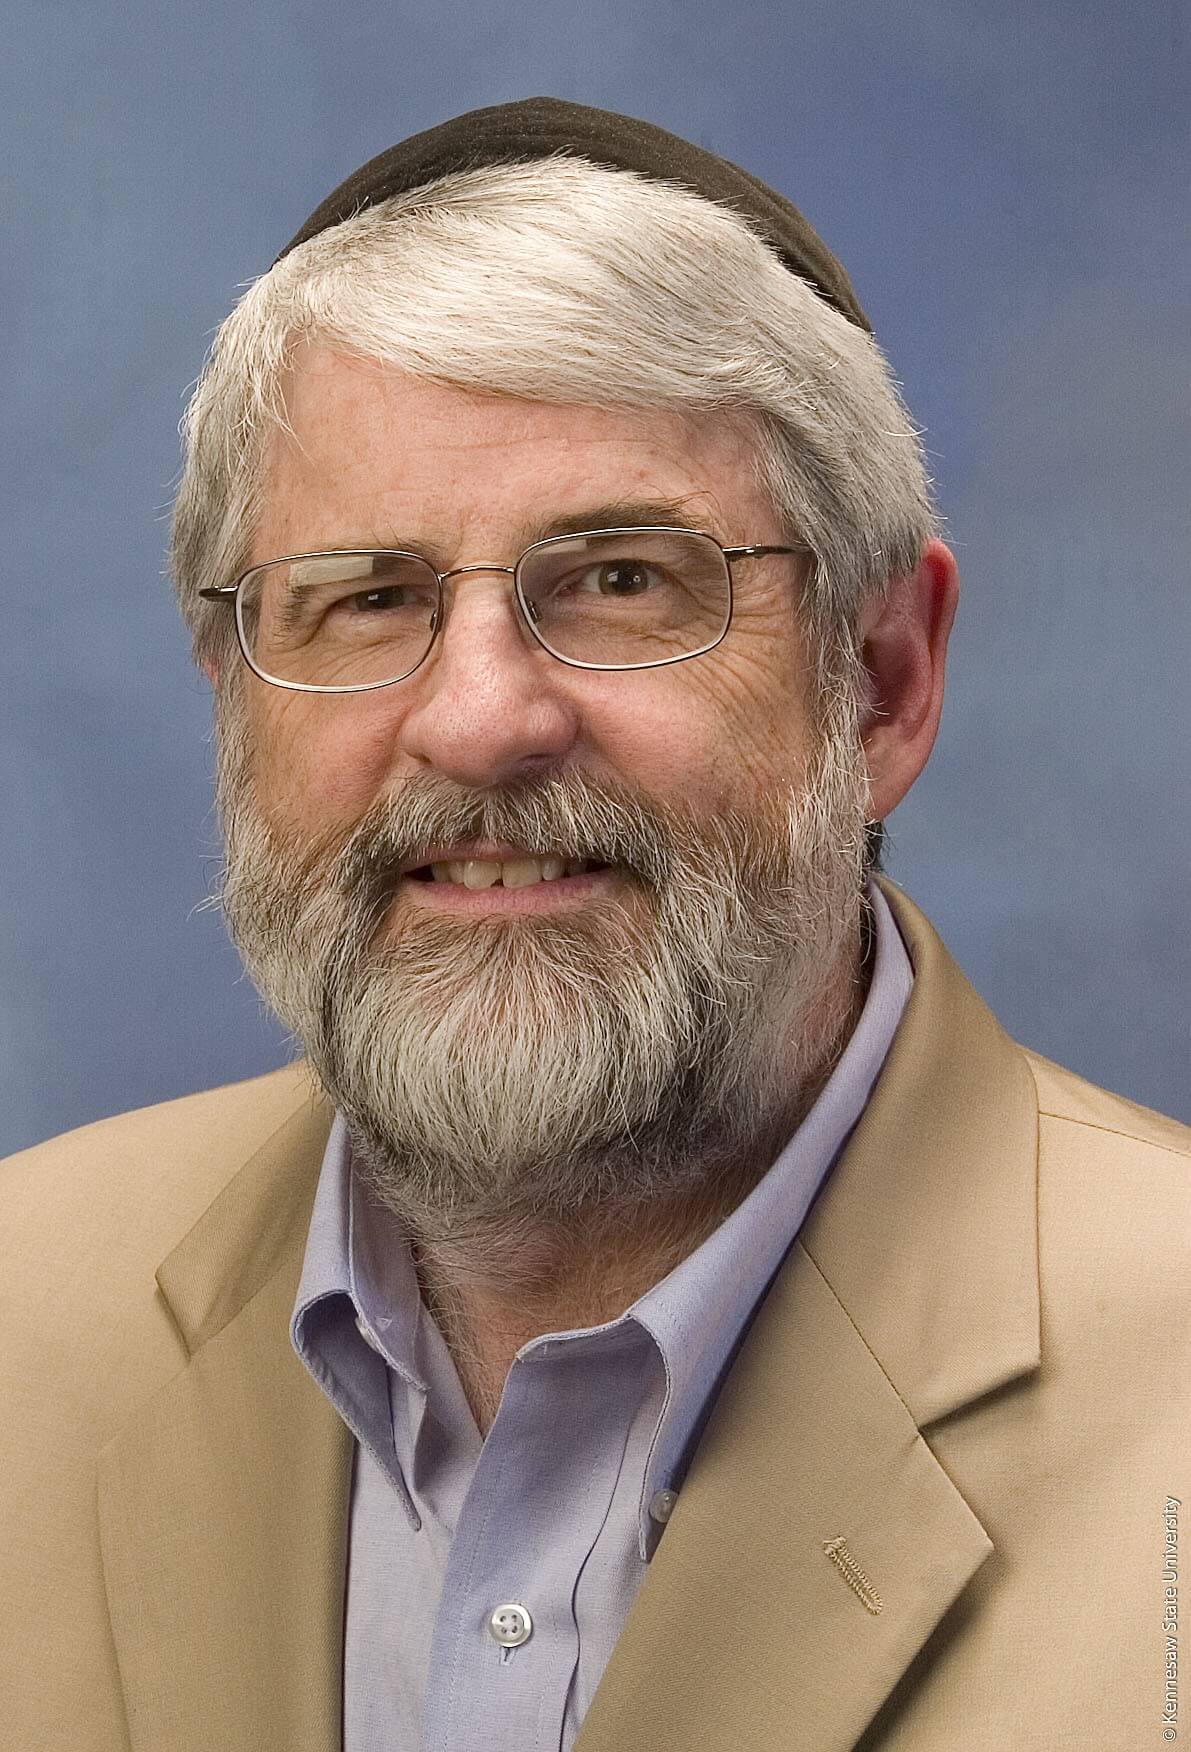 قام البروفيسور ديفيد ميتشل من جامعة كانساس في جورجيا بالبحث في الذاكرة اللاواعية لسنوات عديدة واكتشف نتائج مذهلة. الصورة مجاملة منه